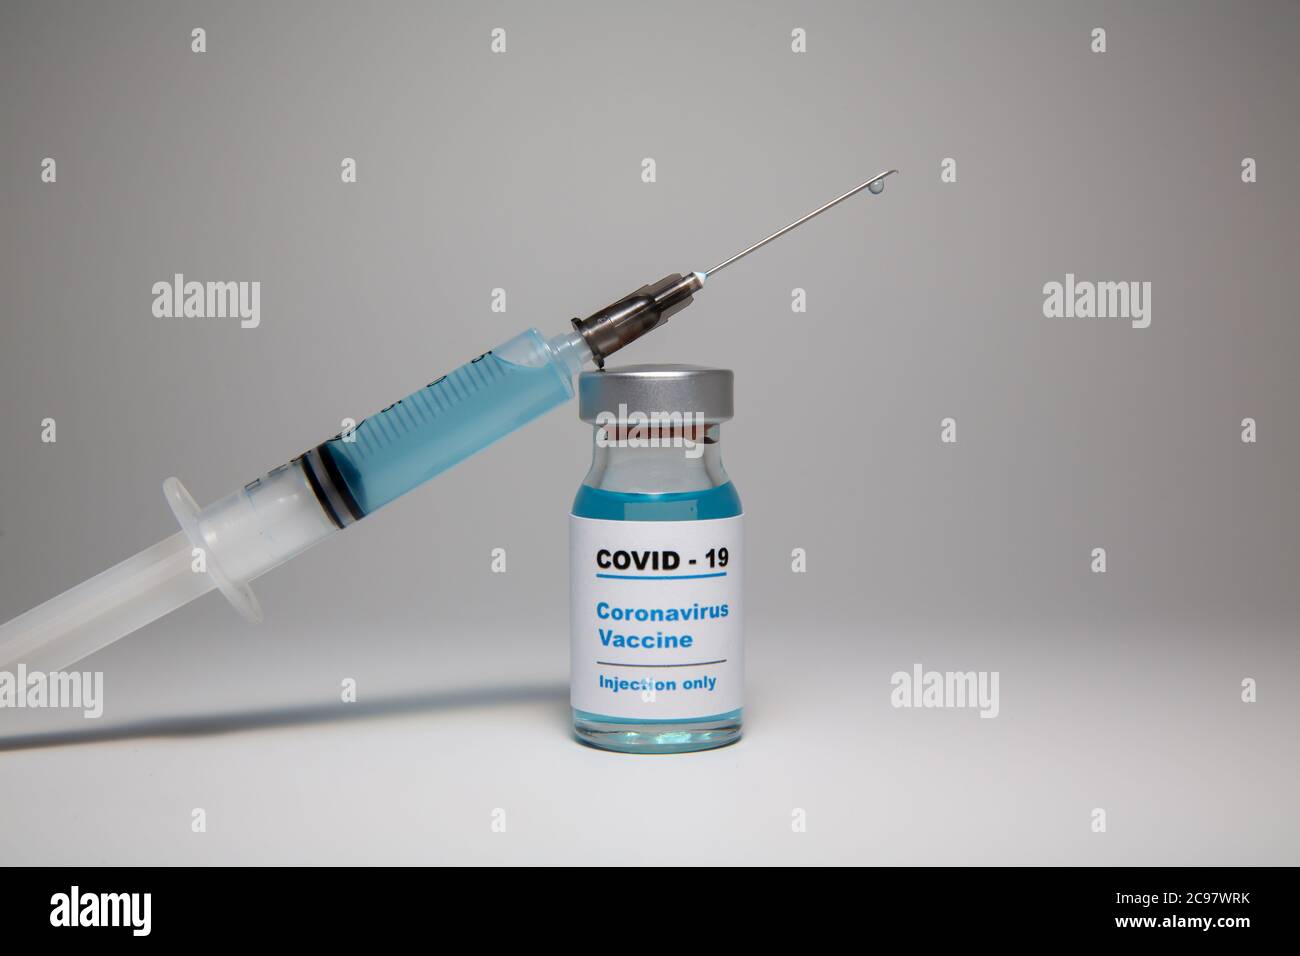 Flacone di vaccino piccolo (flaconcino) con un'etichetta che recita "Covid - 19 Corona virus Vaccine Injection only" e una siringa per iniezione medica con un vaccino d Foto Stock